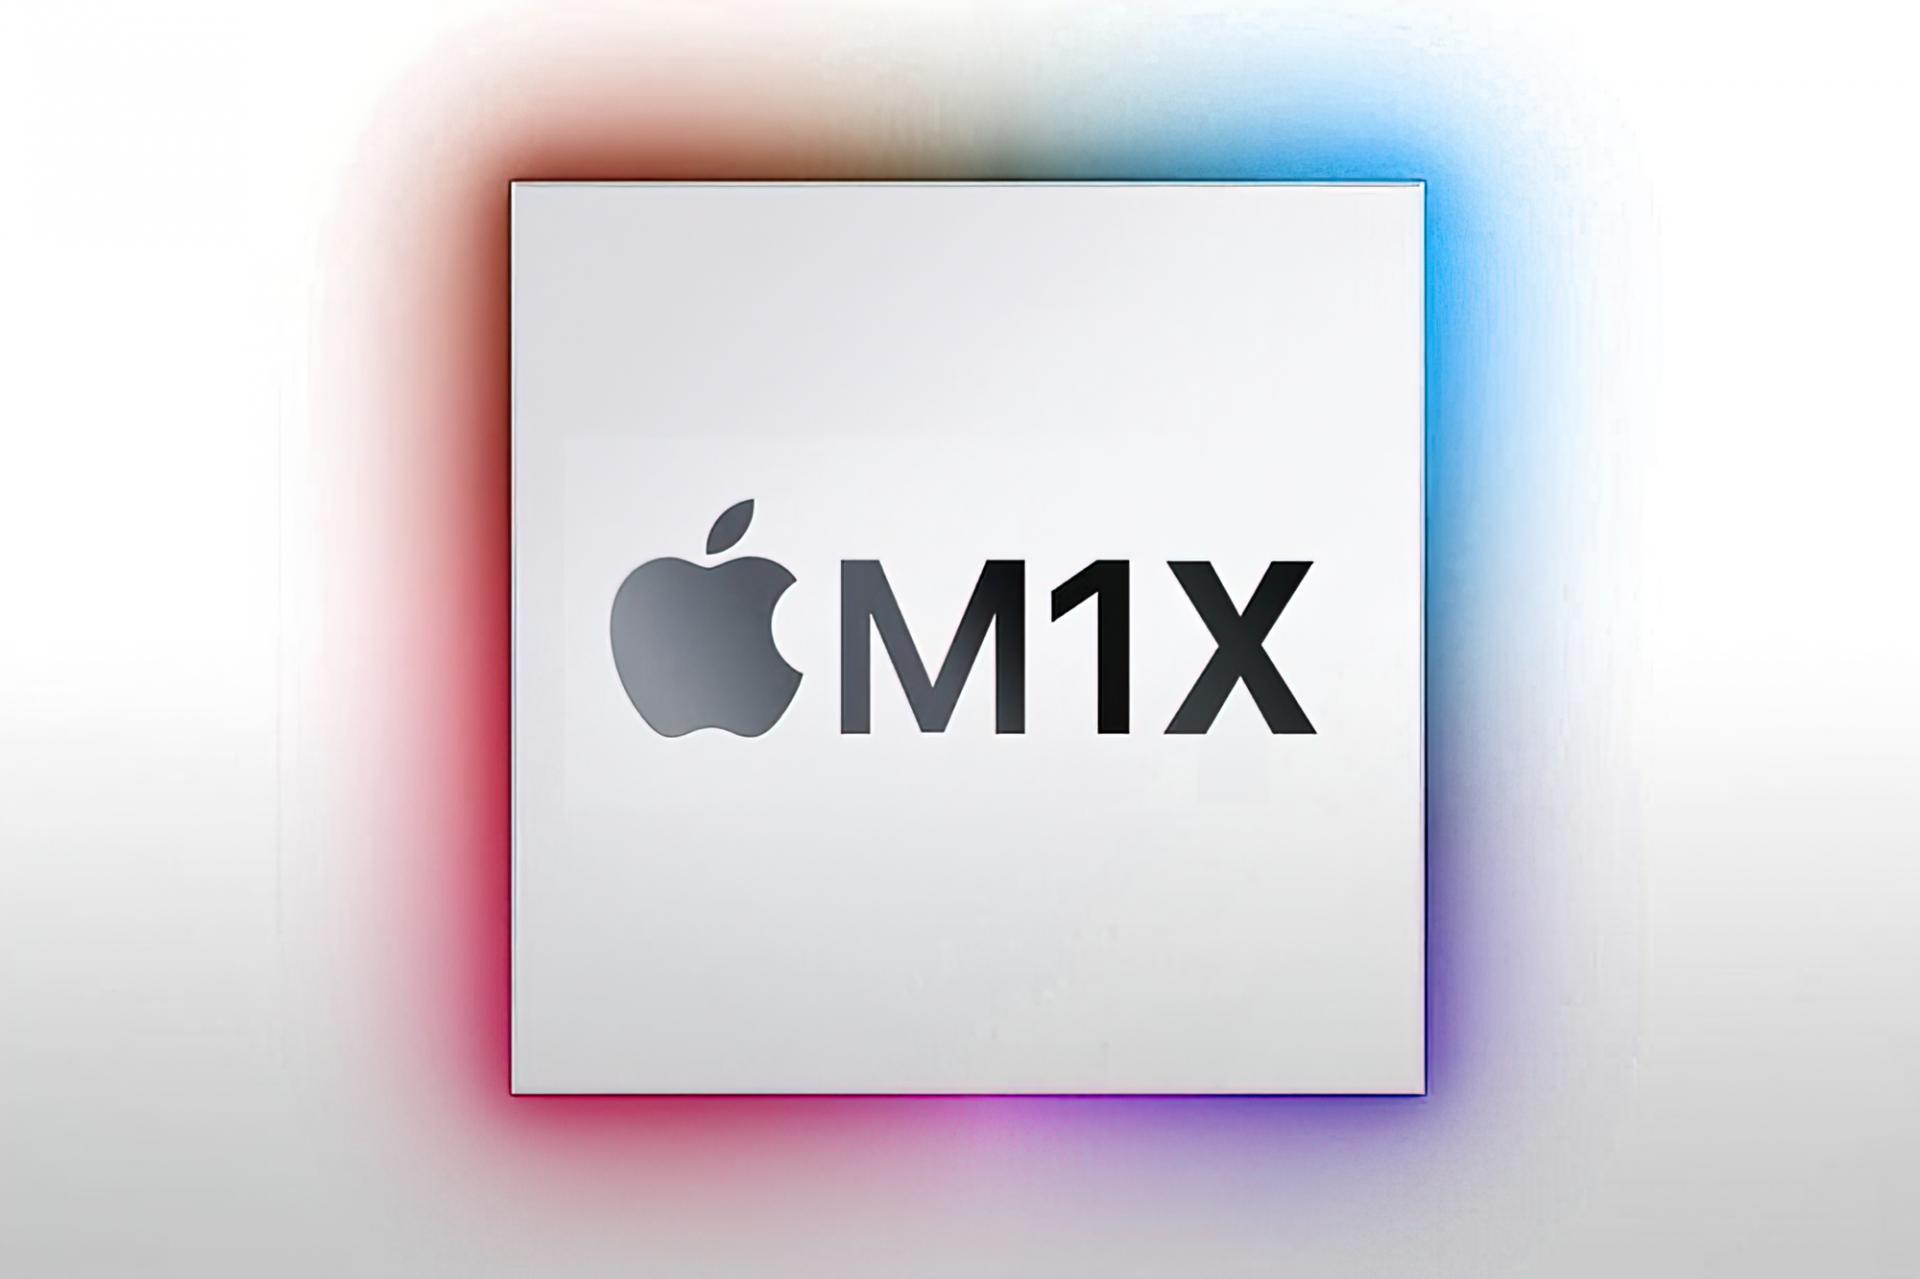 Процессор M1X от Apple: последние известия